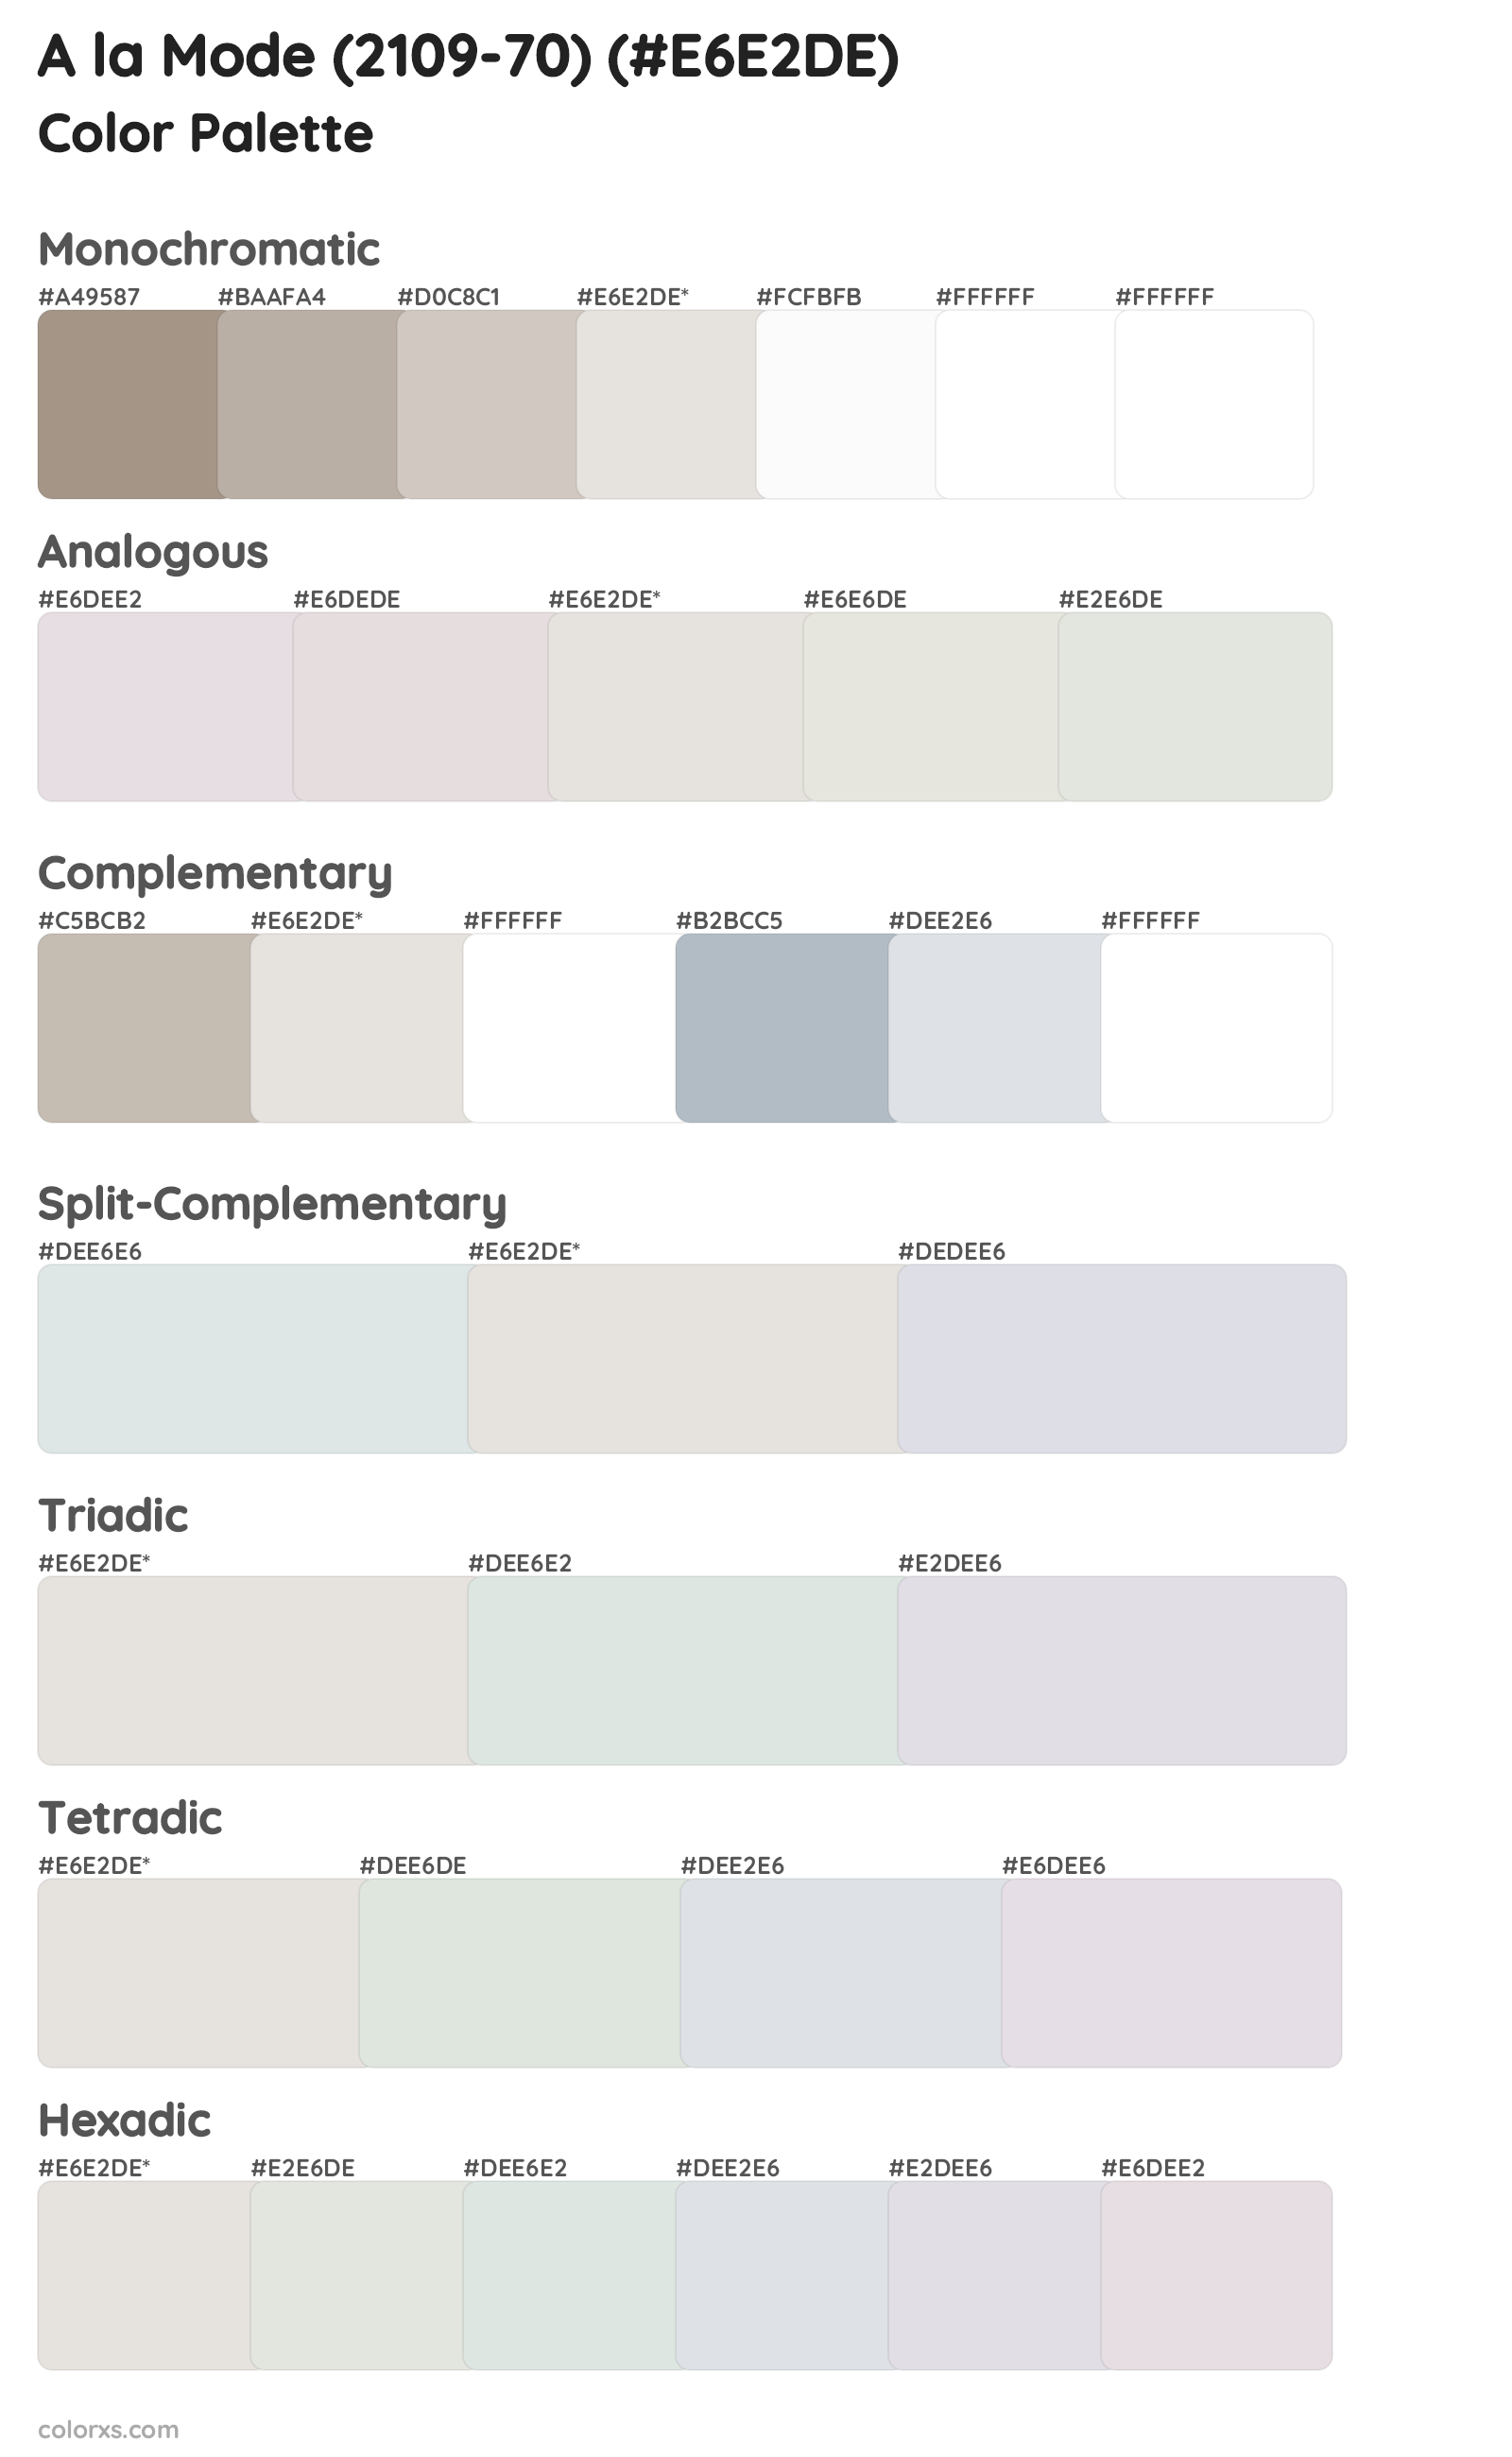 A la Mode (2109-70) Color Scheme Palettes